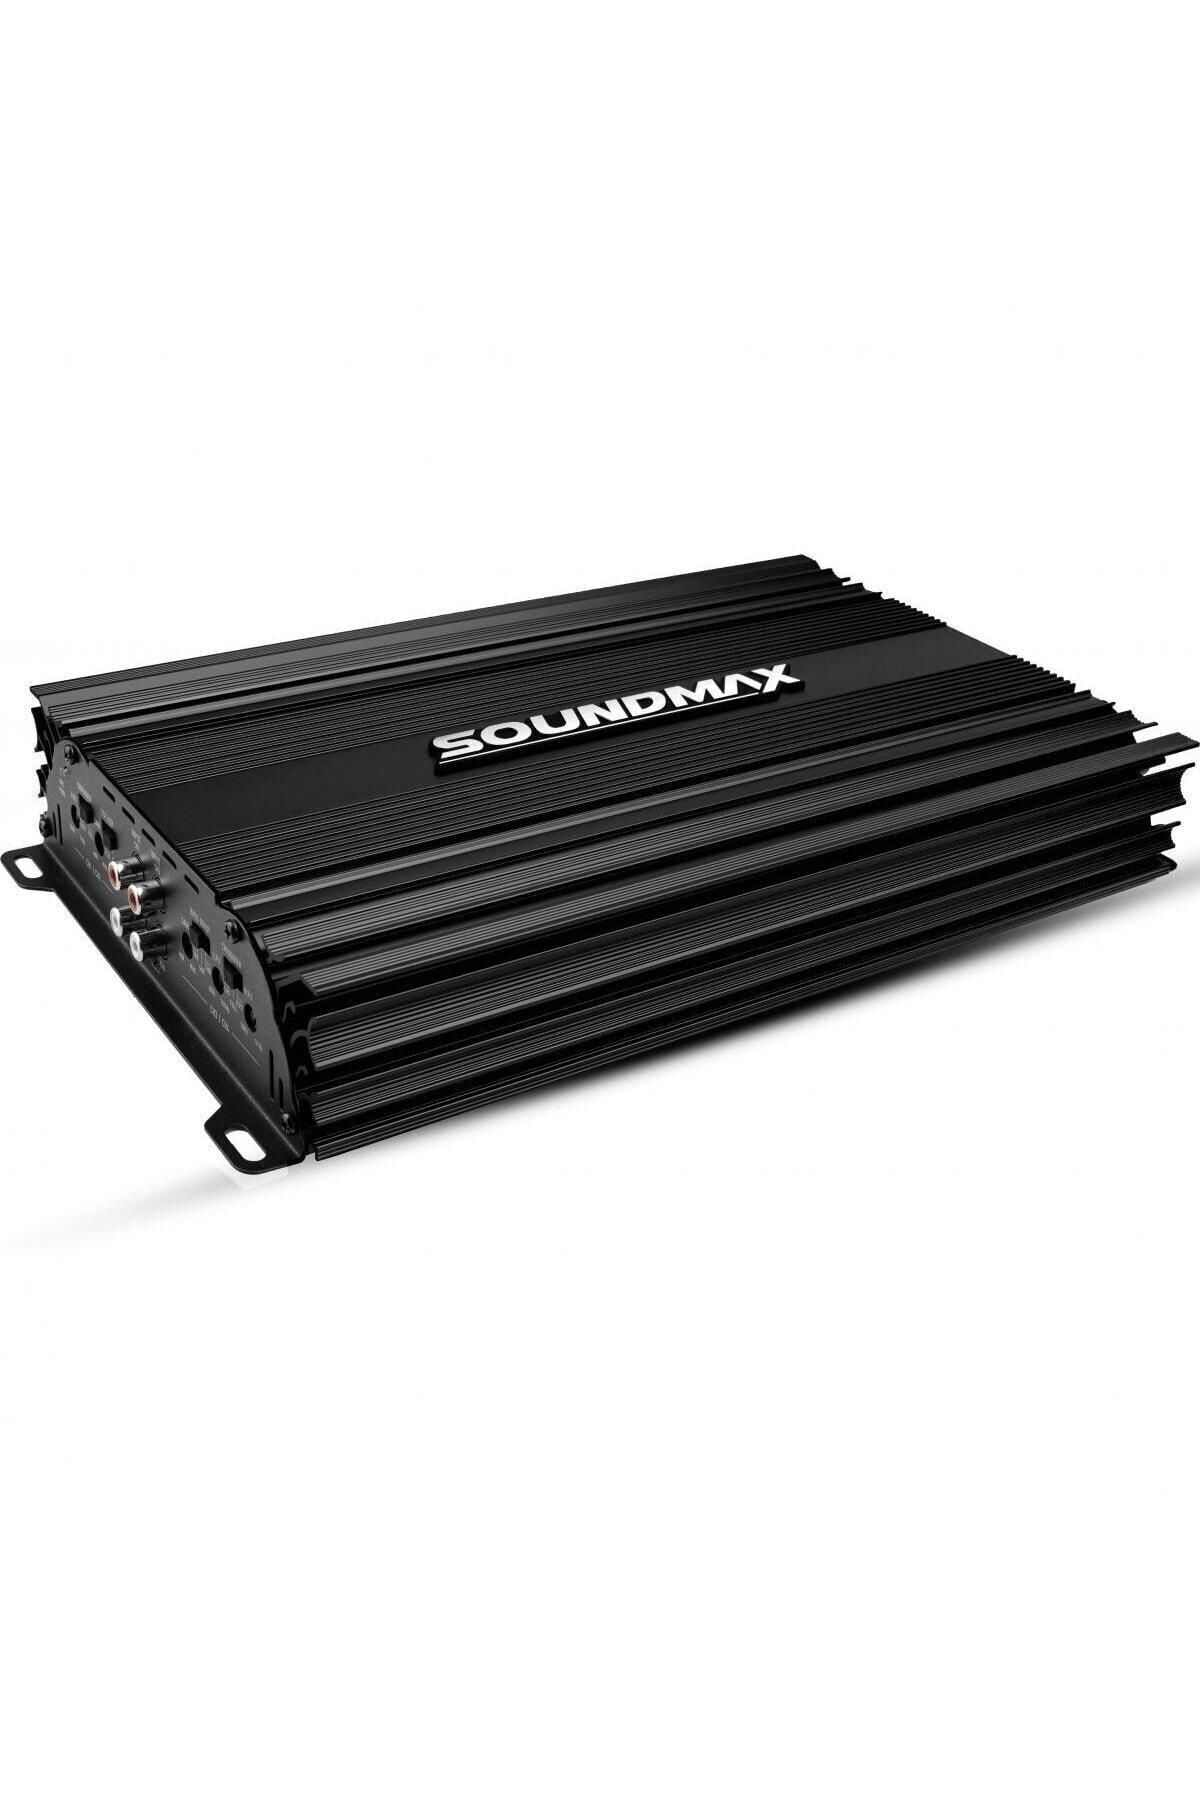 Soundmax Sx-2700.4 3000w 4 Kanal Profesyonel Oto Anfi